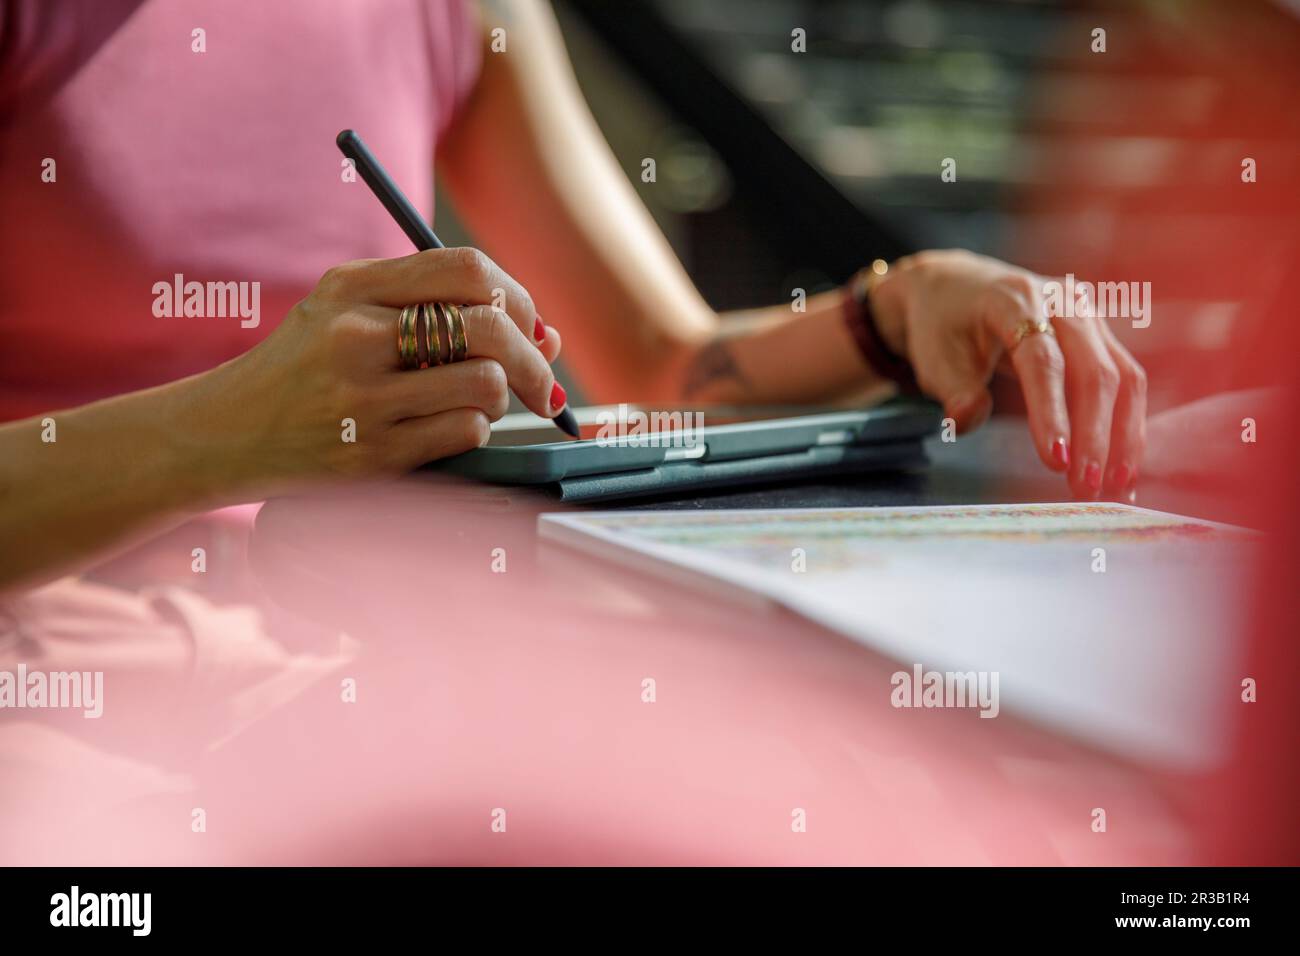 Main de femme avec dessin au stylo numérisé sur une tablette graphique Banque D'Images